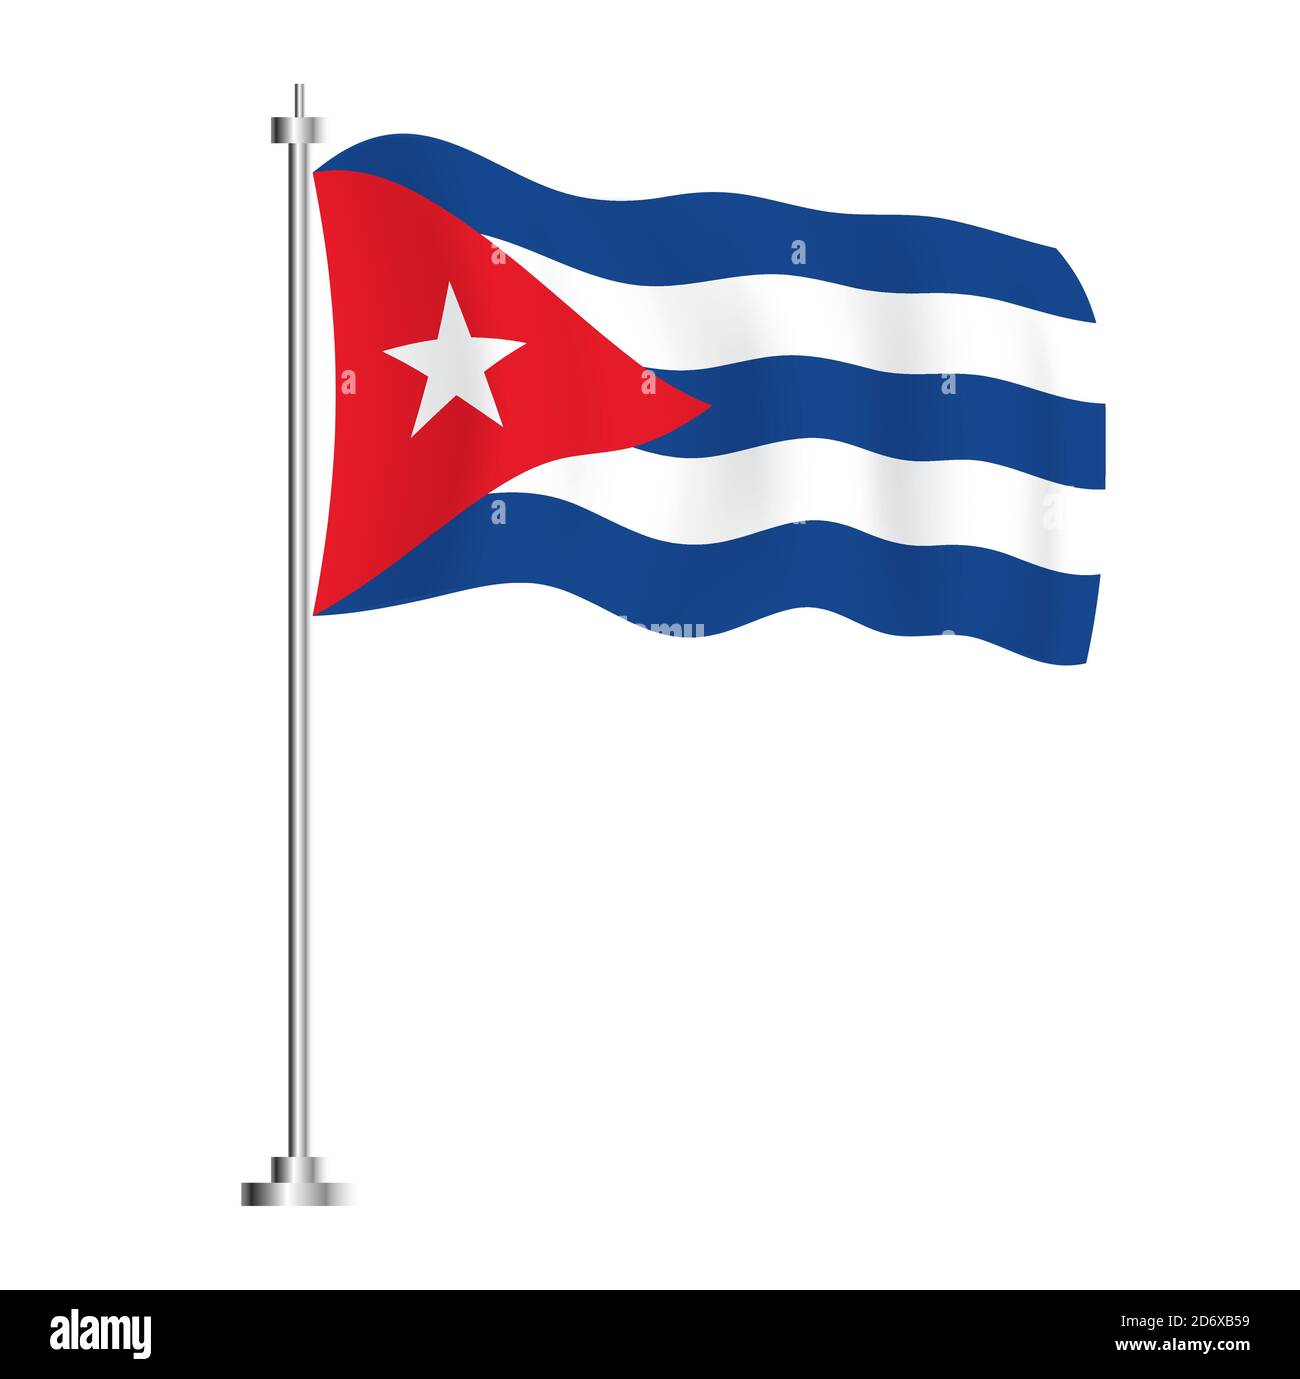 Bandiera cubana. Bandiera ad onda isolata del Paese di Cuba. Illustrazione vettoriale. Illustrazione Vettoriale